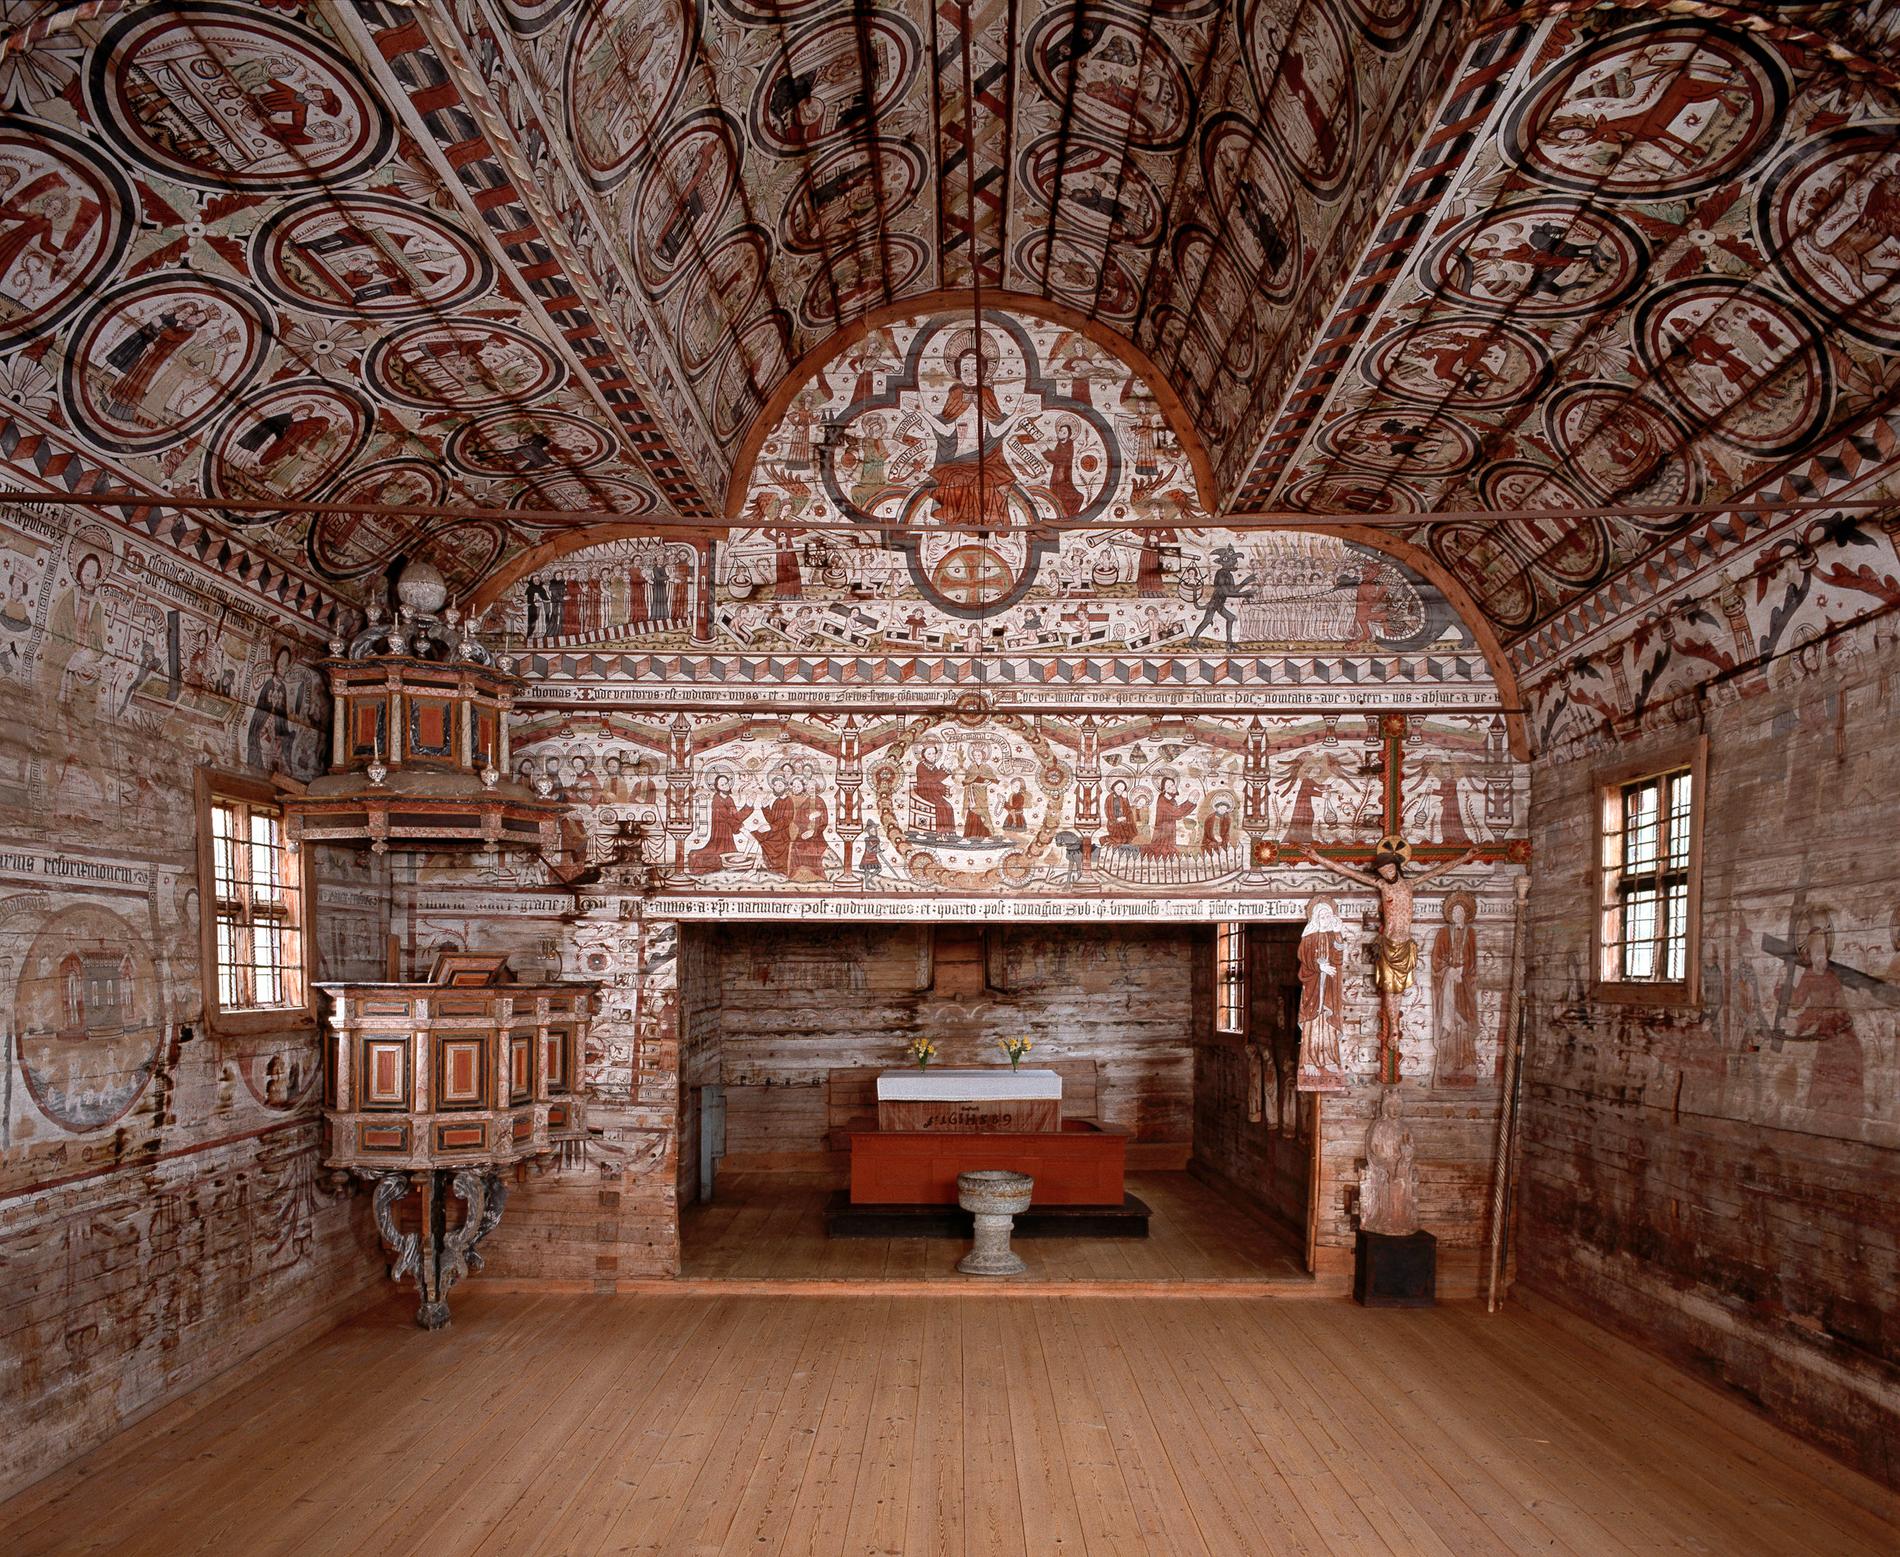 Väggar och tak i Södra Rådas träkyrka var täckta av medeltida målningar. De äldsta, i koret längst bort på bilden, var från 1323 och bedömdes som unikt väl bevarade. Målningarna i långskeppet gjordes 1494 och tillskrivs kyrkomålaren Mäster Amund.